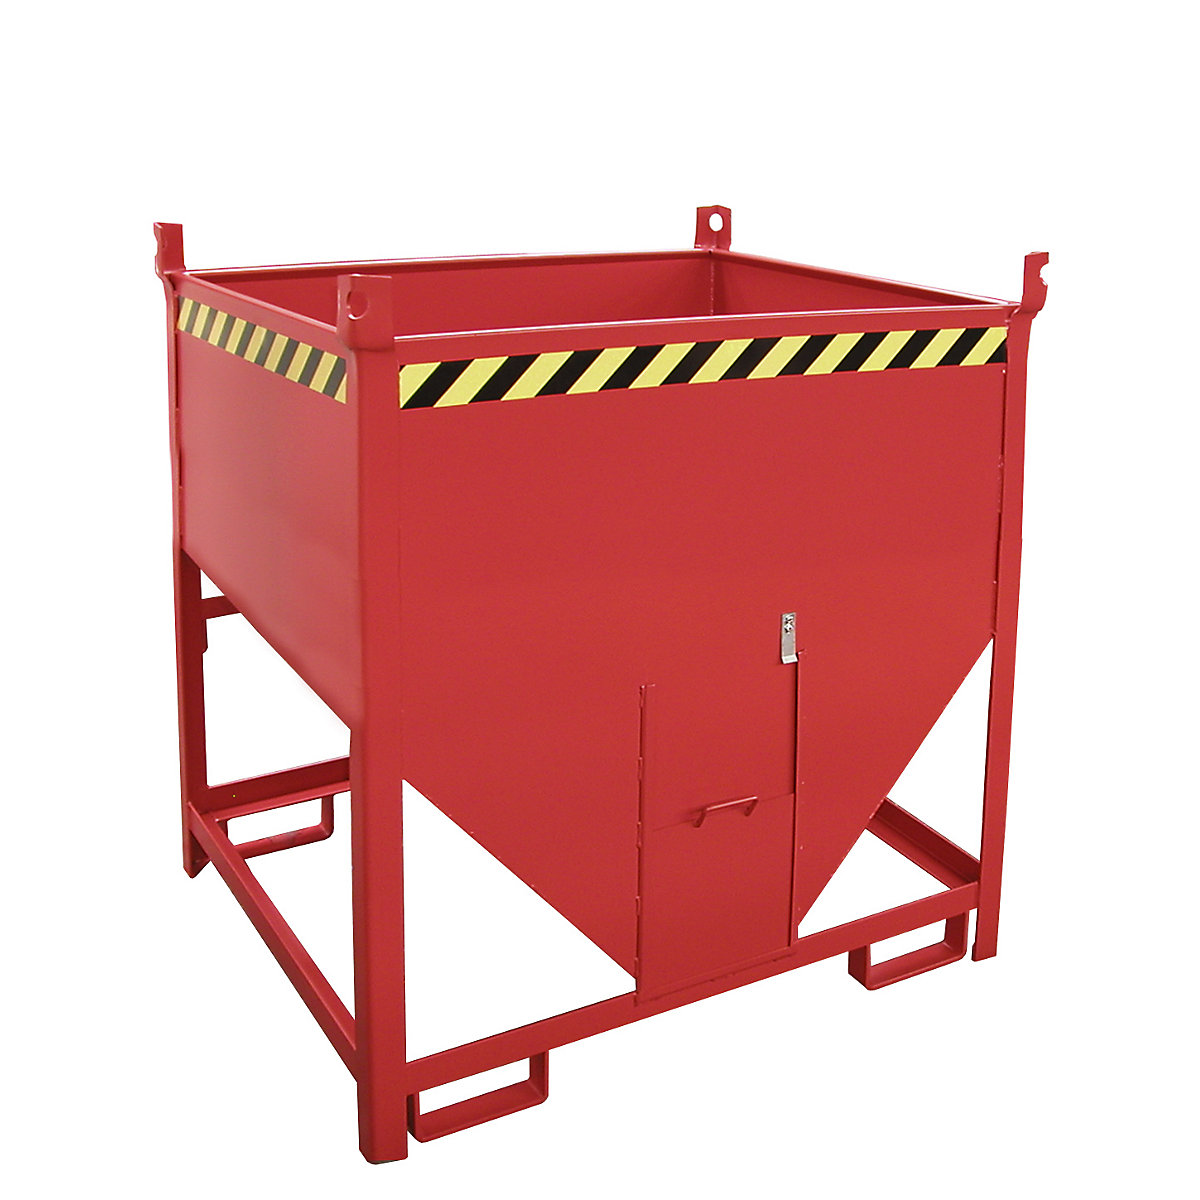 Contenitore silo – eurokraft pro, capacità 0,75 m³, con chiusura scorrevole sul lato corto, rosso fuoco RAL 3000-4